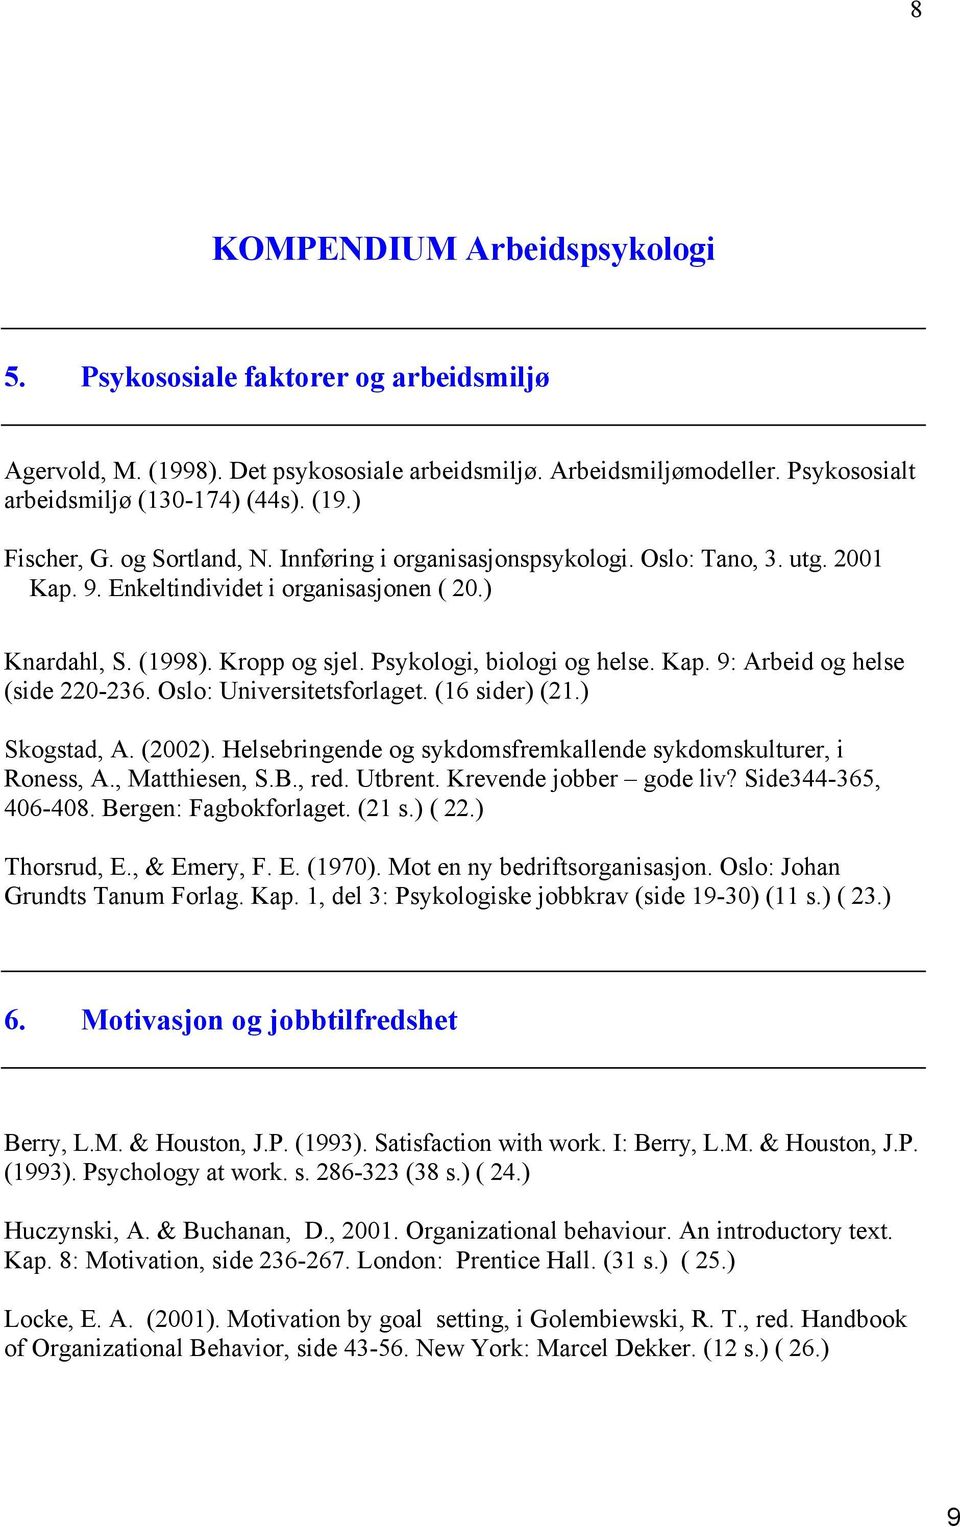 Oslo: Universitetsforlaget. (16 sider) (21.) Skogstad, A. (2002). Helsebringende og sykdomsfremkallende sykdomskulturer, i Roness, A., Matthiesen, S.B., red. Utbrent. Krevende jobber gode liv?